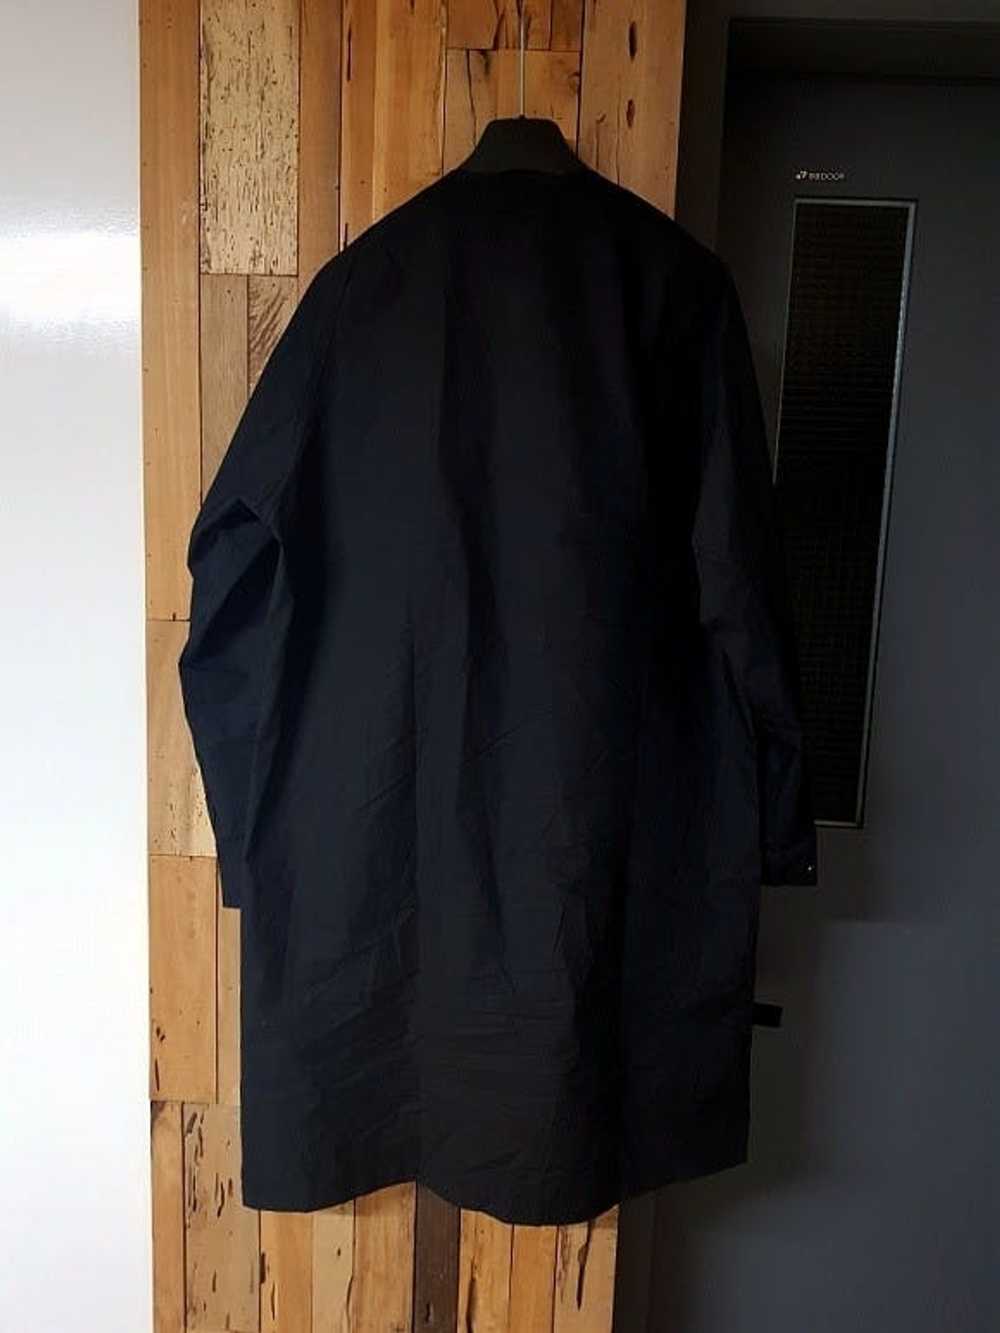 Yohji Yamamoto Yohji Yamamoto patch coat - image 6